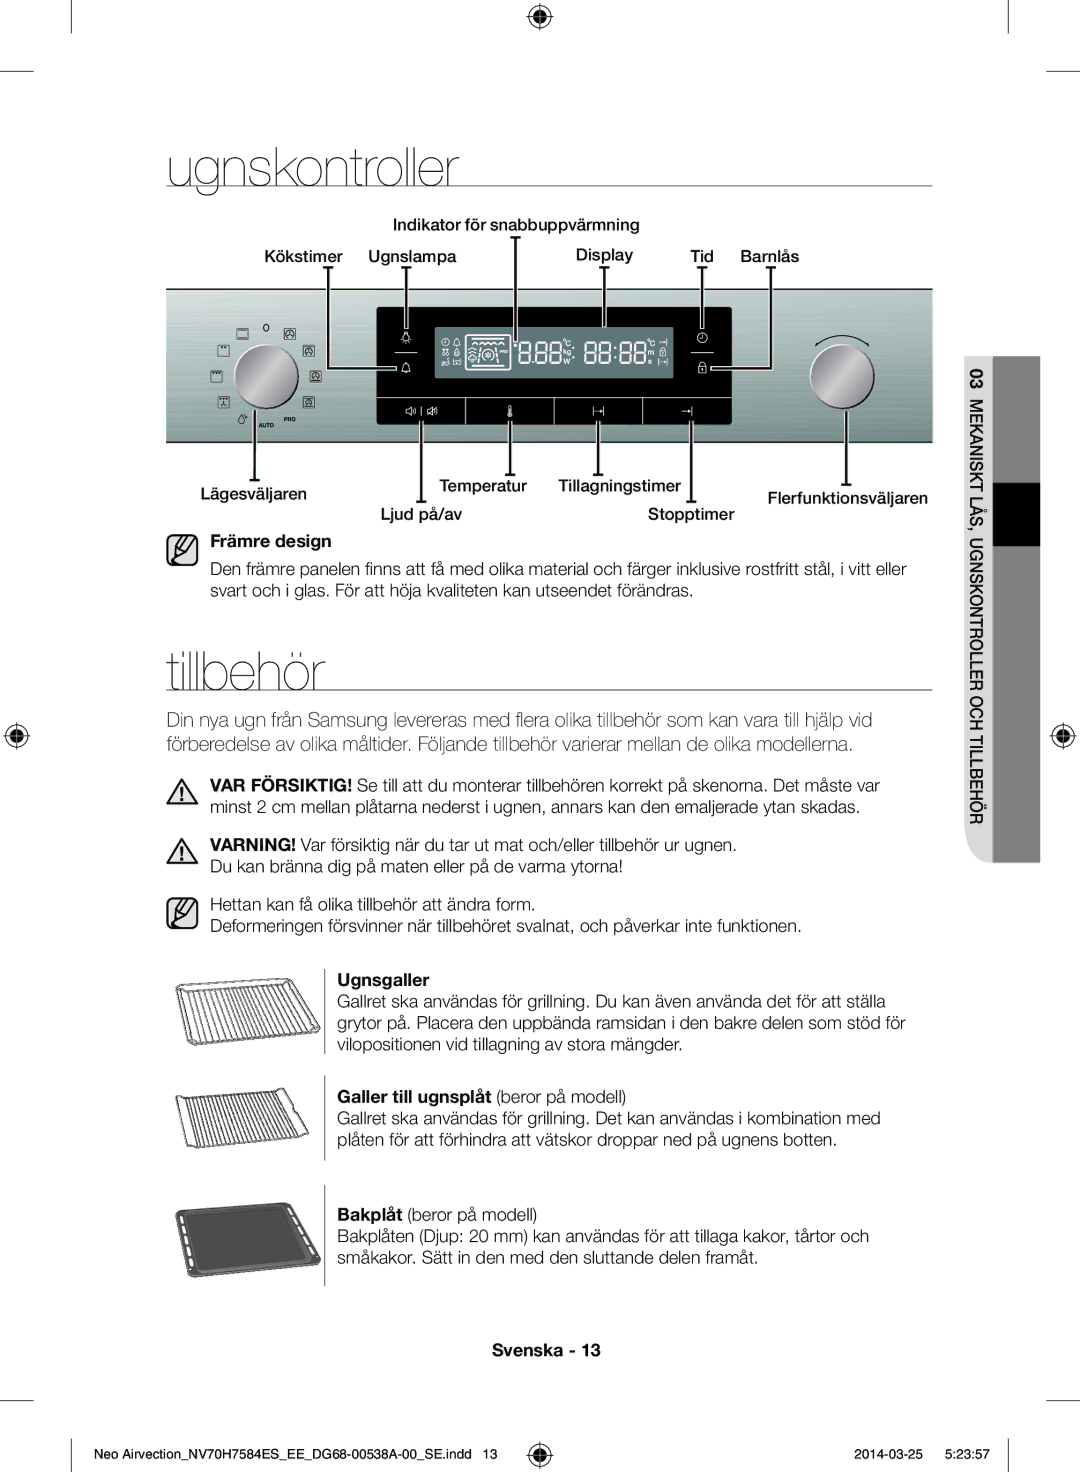 Samsung NV70H7584ES/EE manual Ugnskontroller, Tillbehör, Främre design, Ugnsgaller, Galler till ugnsplåt beror på modell 